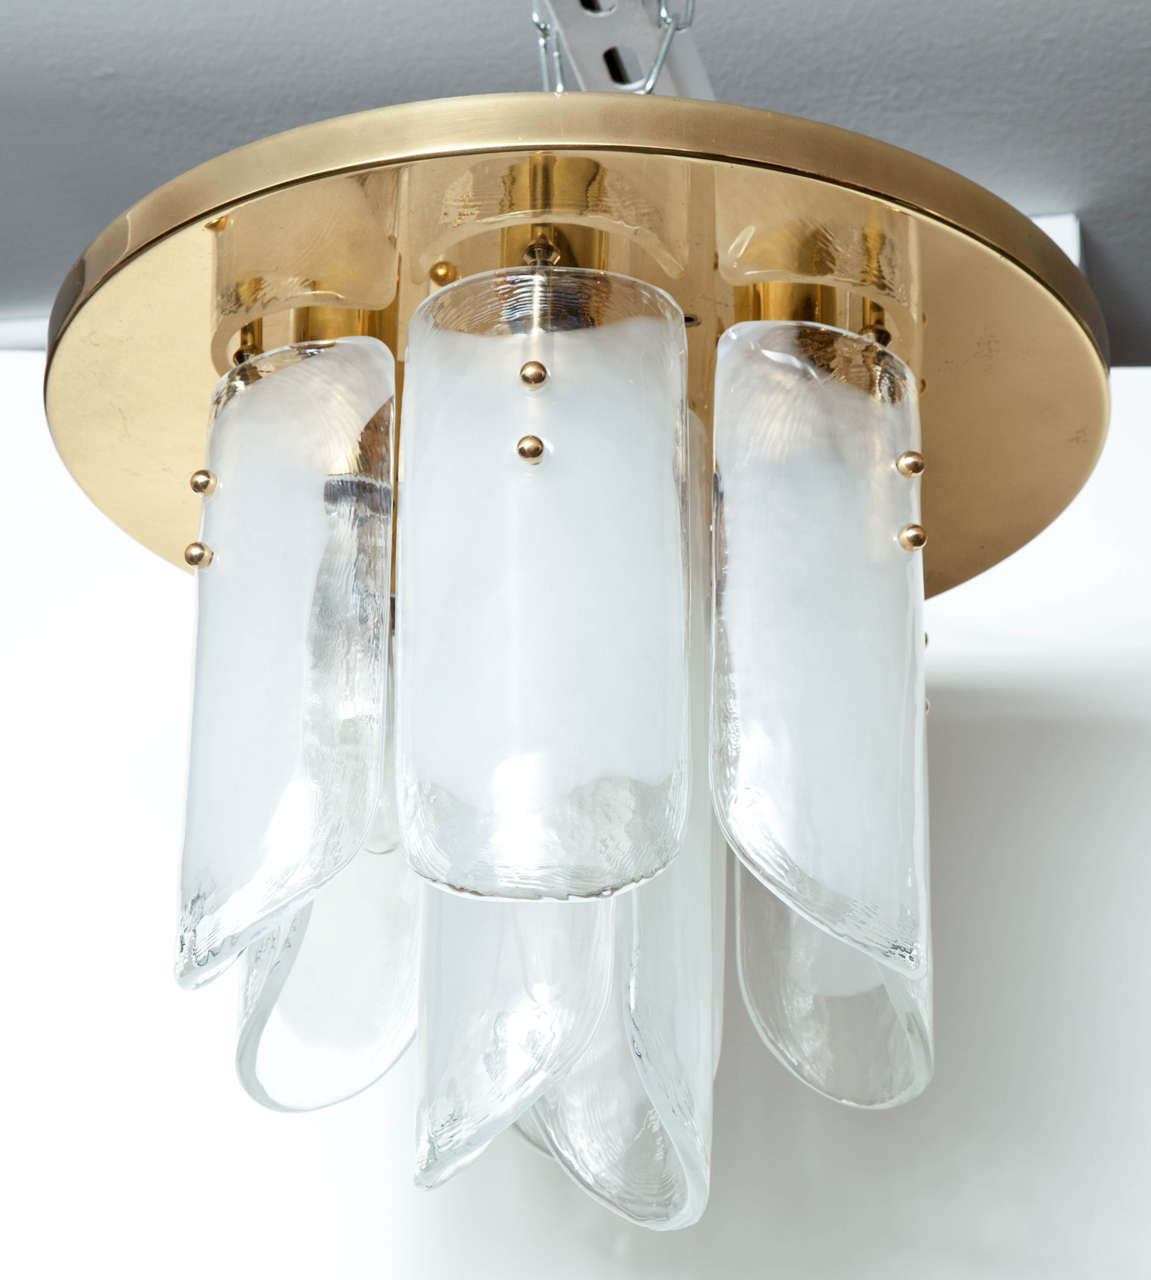 Scandinavian Modern Kalmar Brass and Glass Flush Mount, pair available